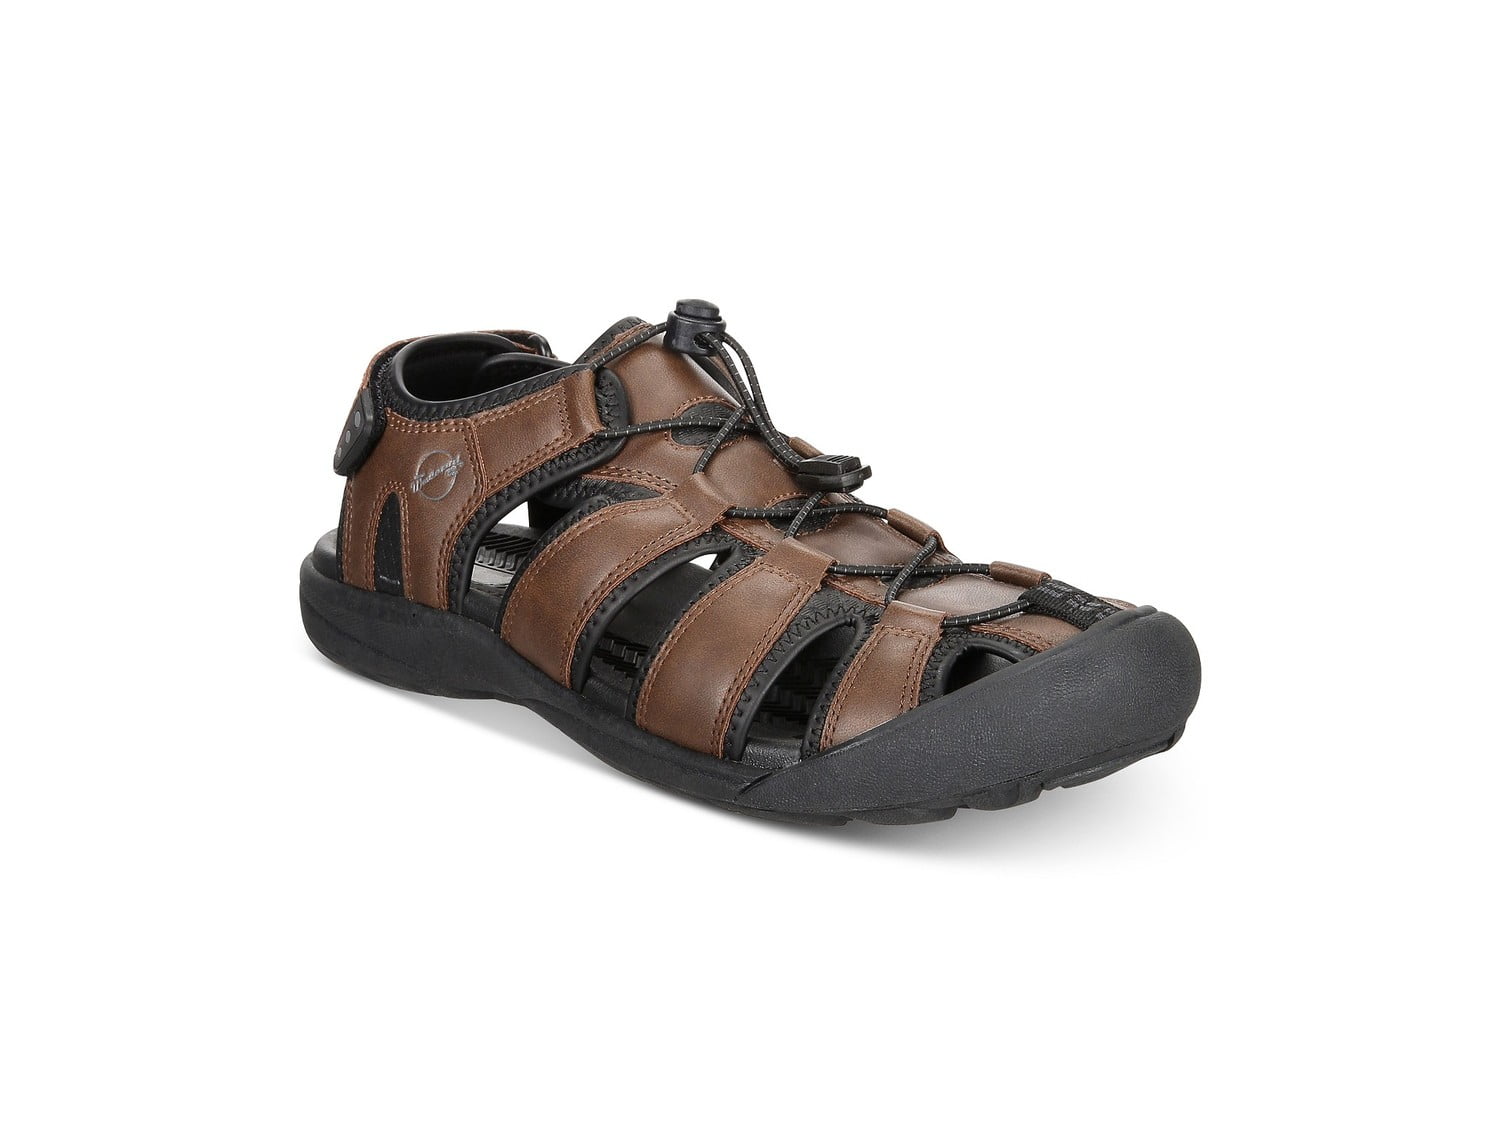 Keen Rialto 3 Point Black/Neutral Gray Comfort Sandal Men's sizes 7-13/NEW!!! 